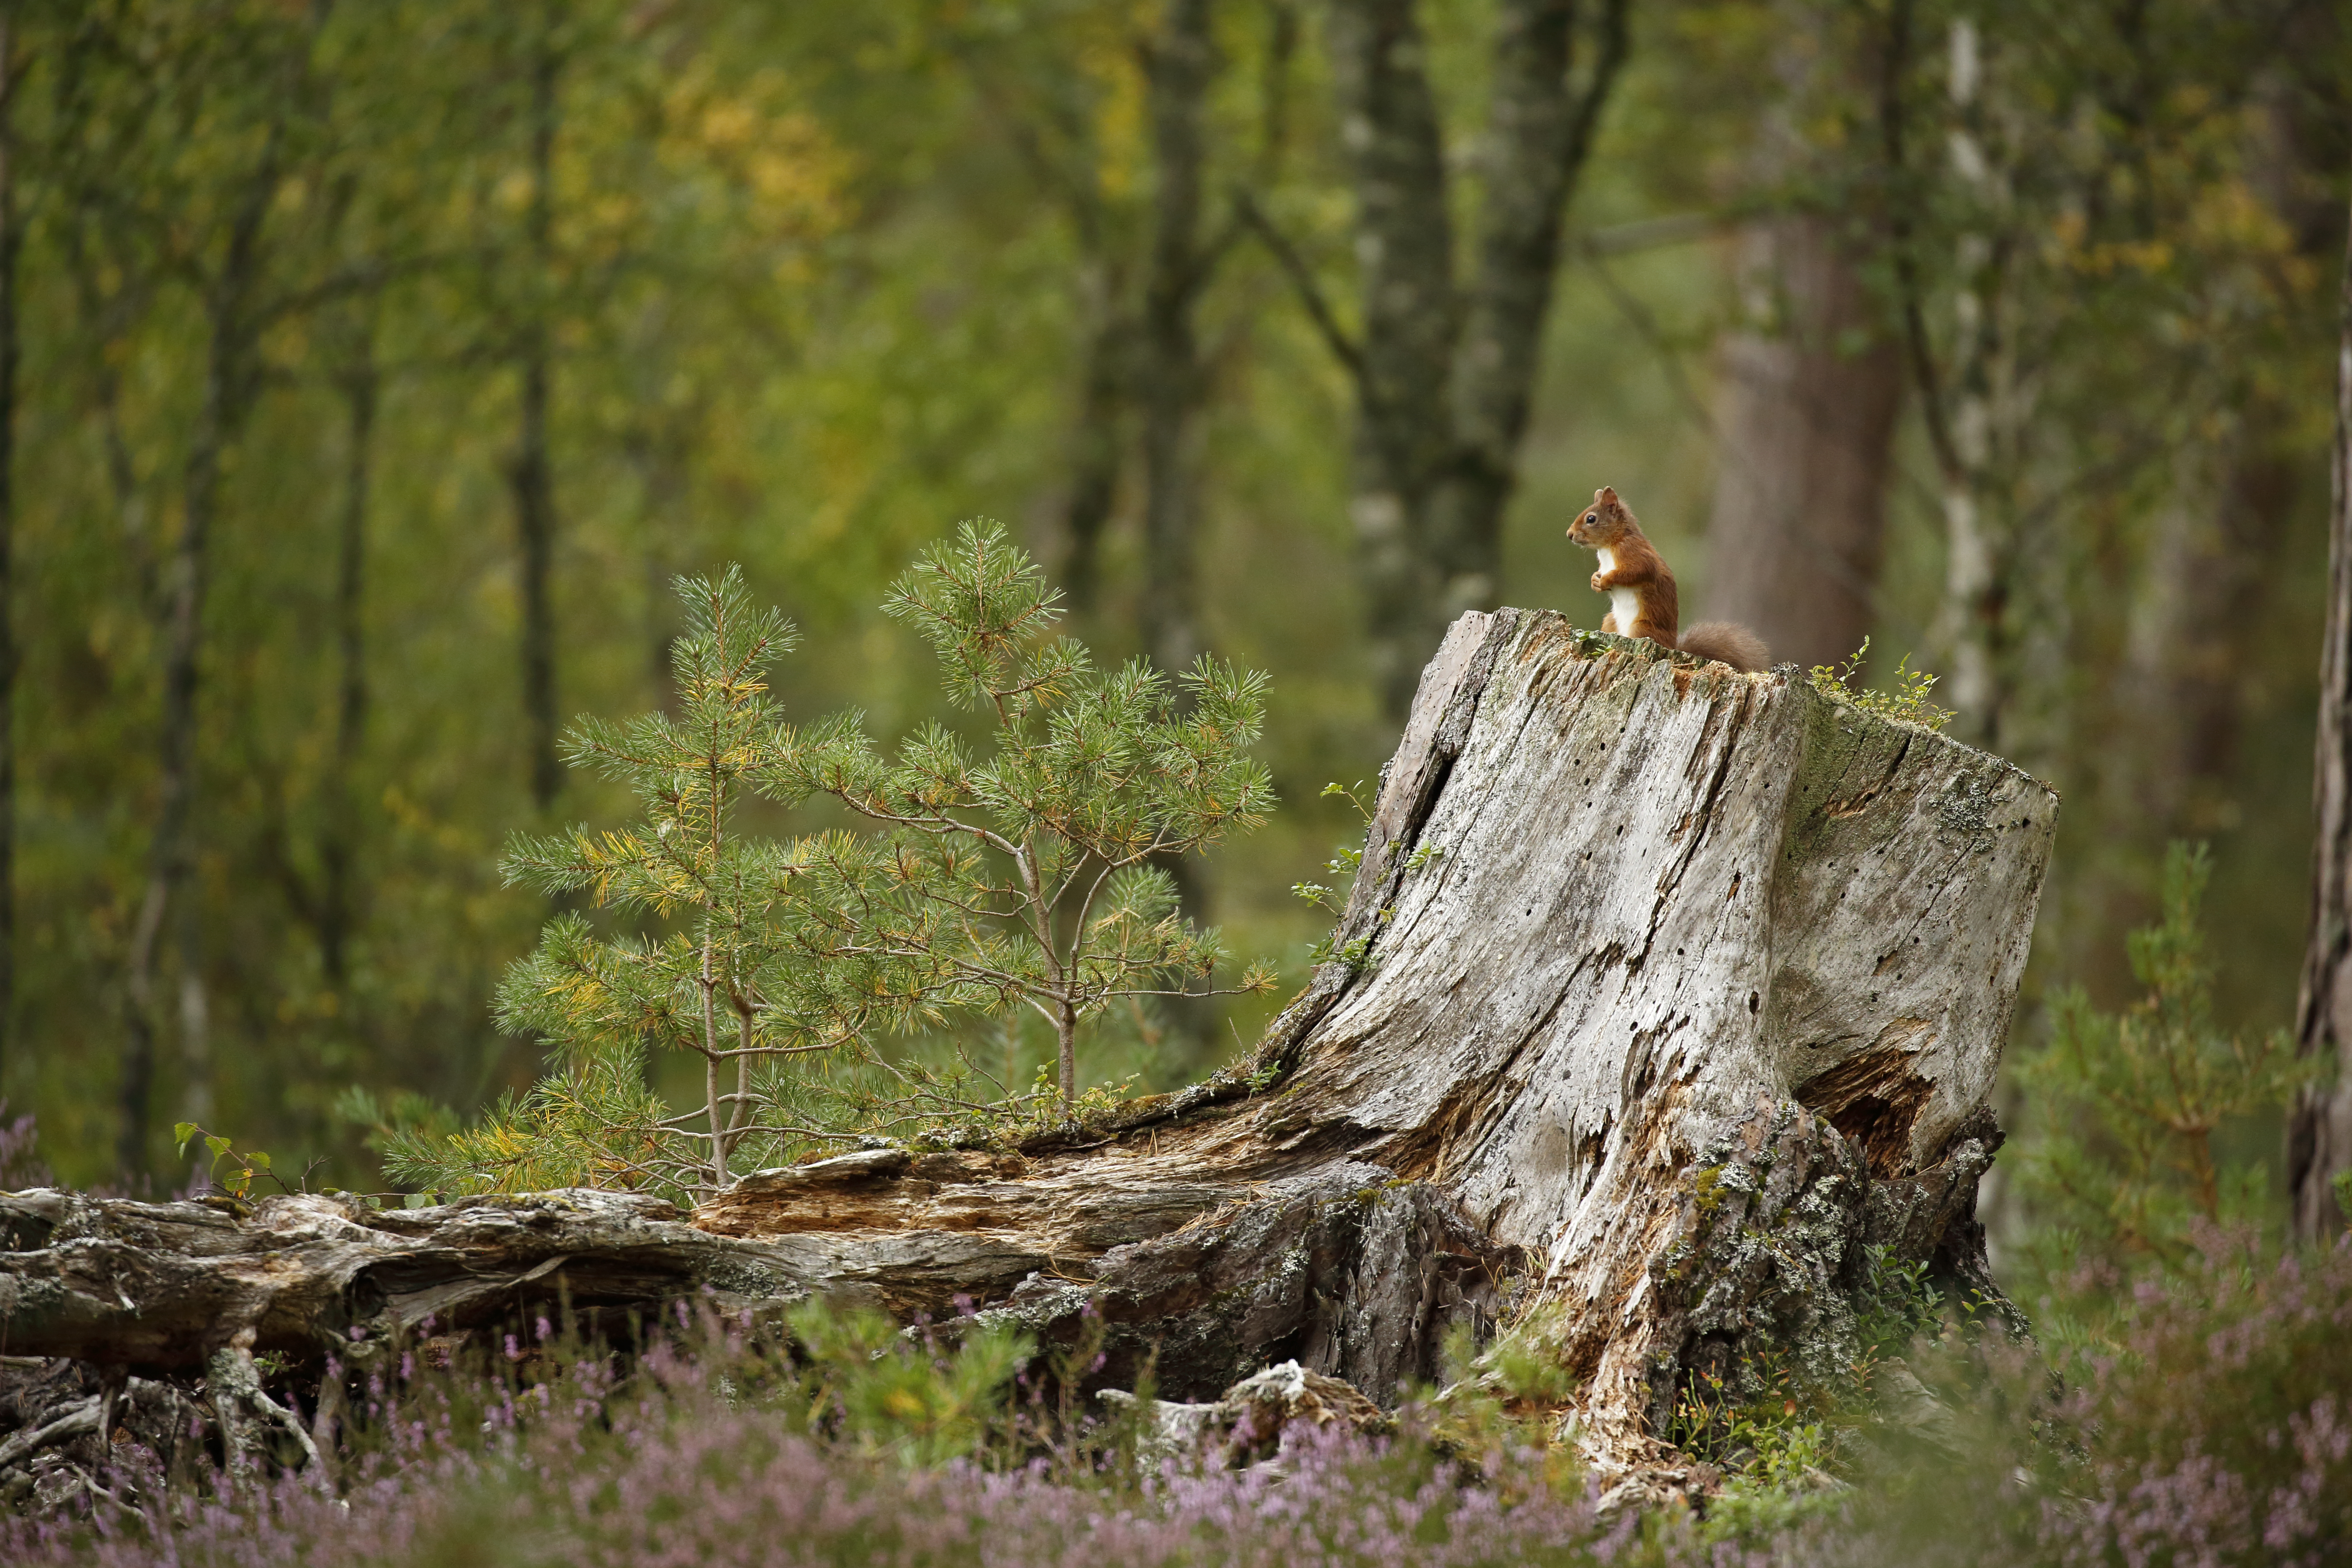 Red squirrel in woodland habitat